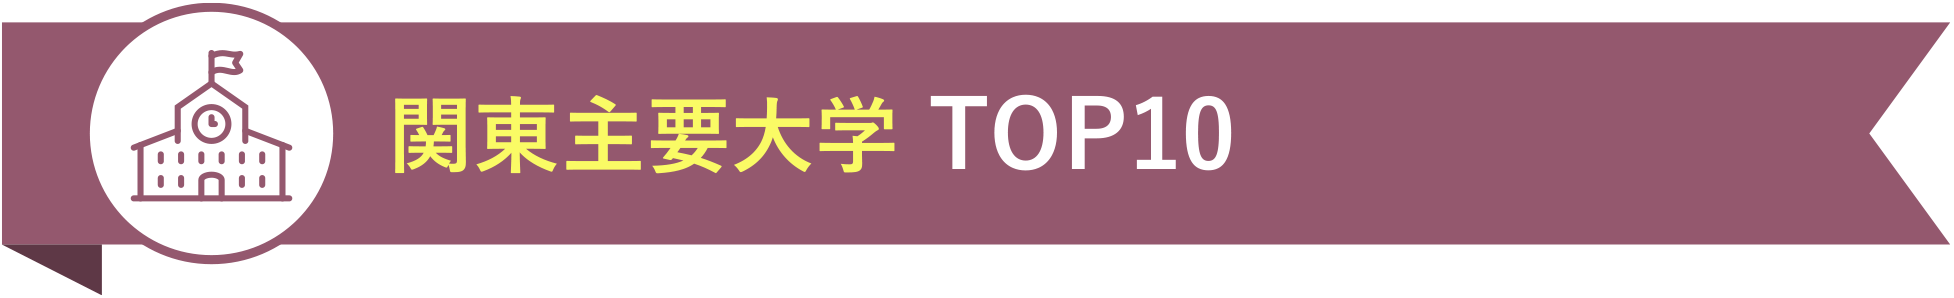 関東主要大学 TOP10